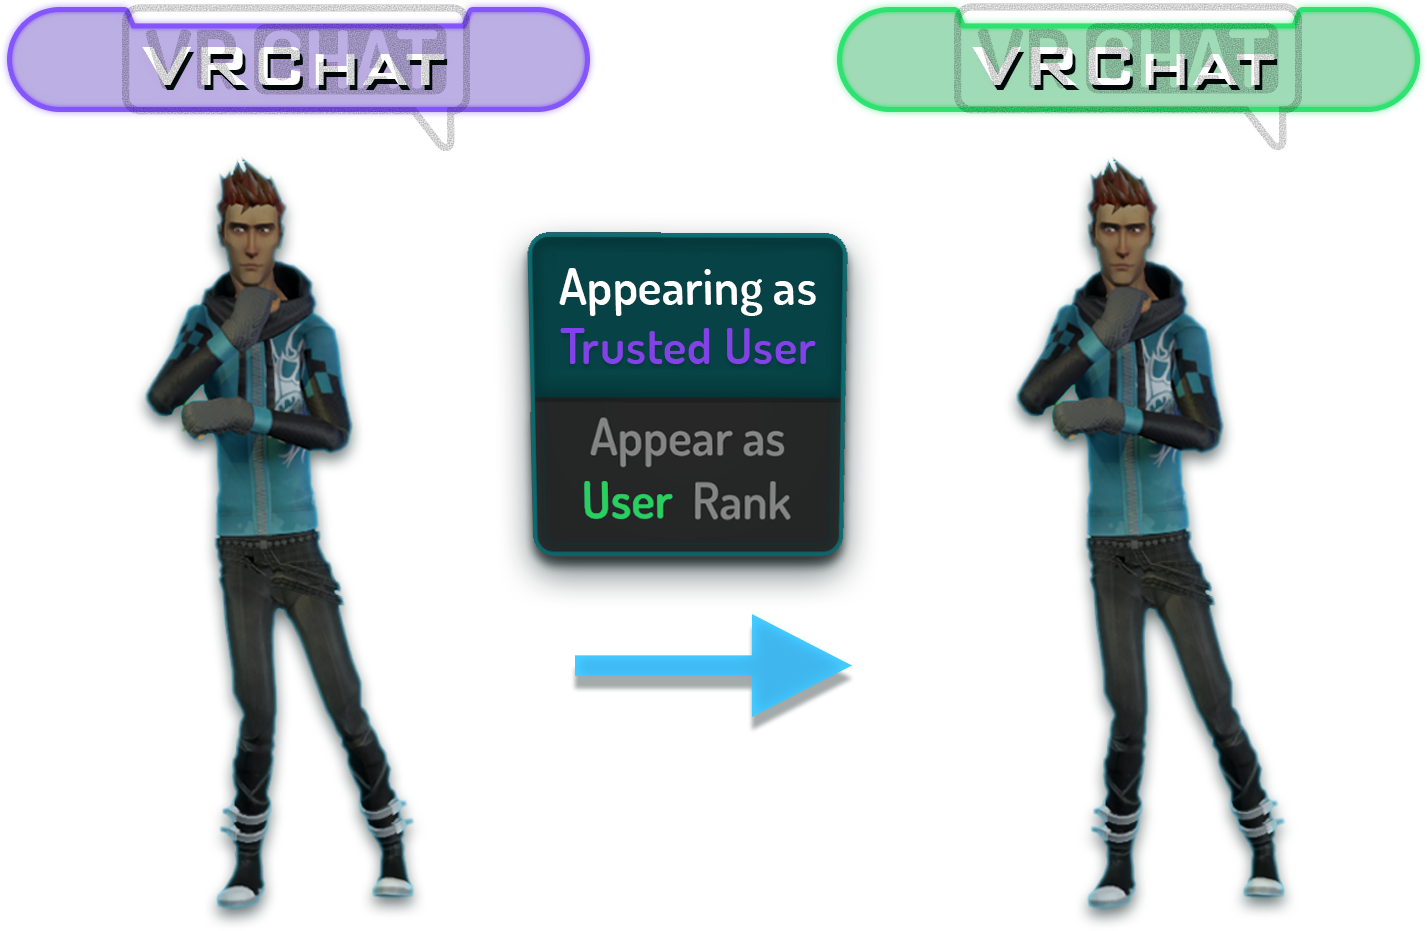 VRChat an toàn: VRChat là một trò chơi thú vị. Nhưng đừng lo lắng, tất cả những gì bạn cần làm là đảm bảo an toàn cho bản thân mình khi tham gia vào VRChat. Đừng ngần ngại chia sẻ những trải nghiệm đó với bạn bè và cùng trải nghiệm thế giới ảo với VRChat an toàn!